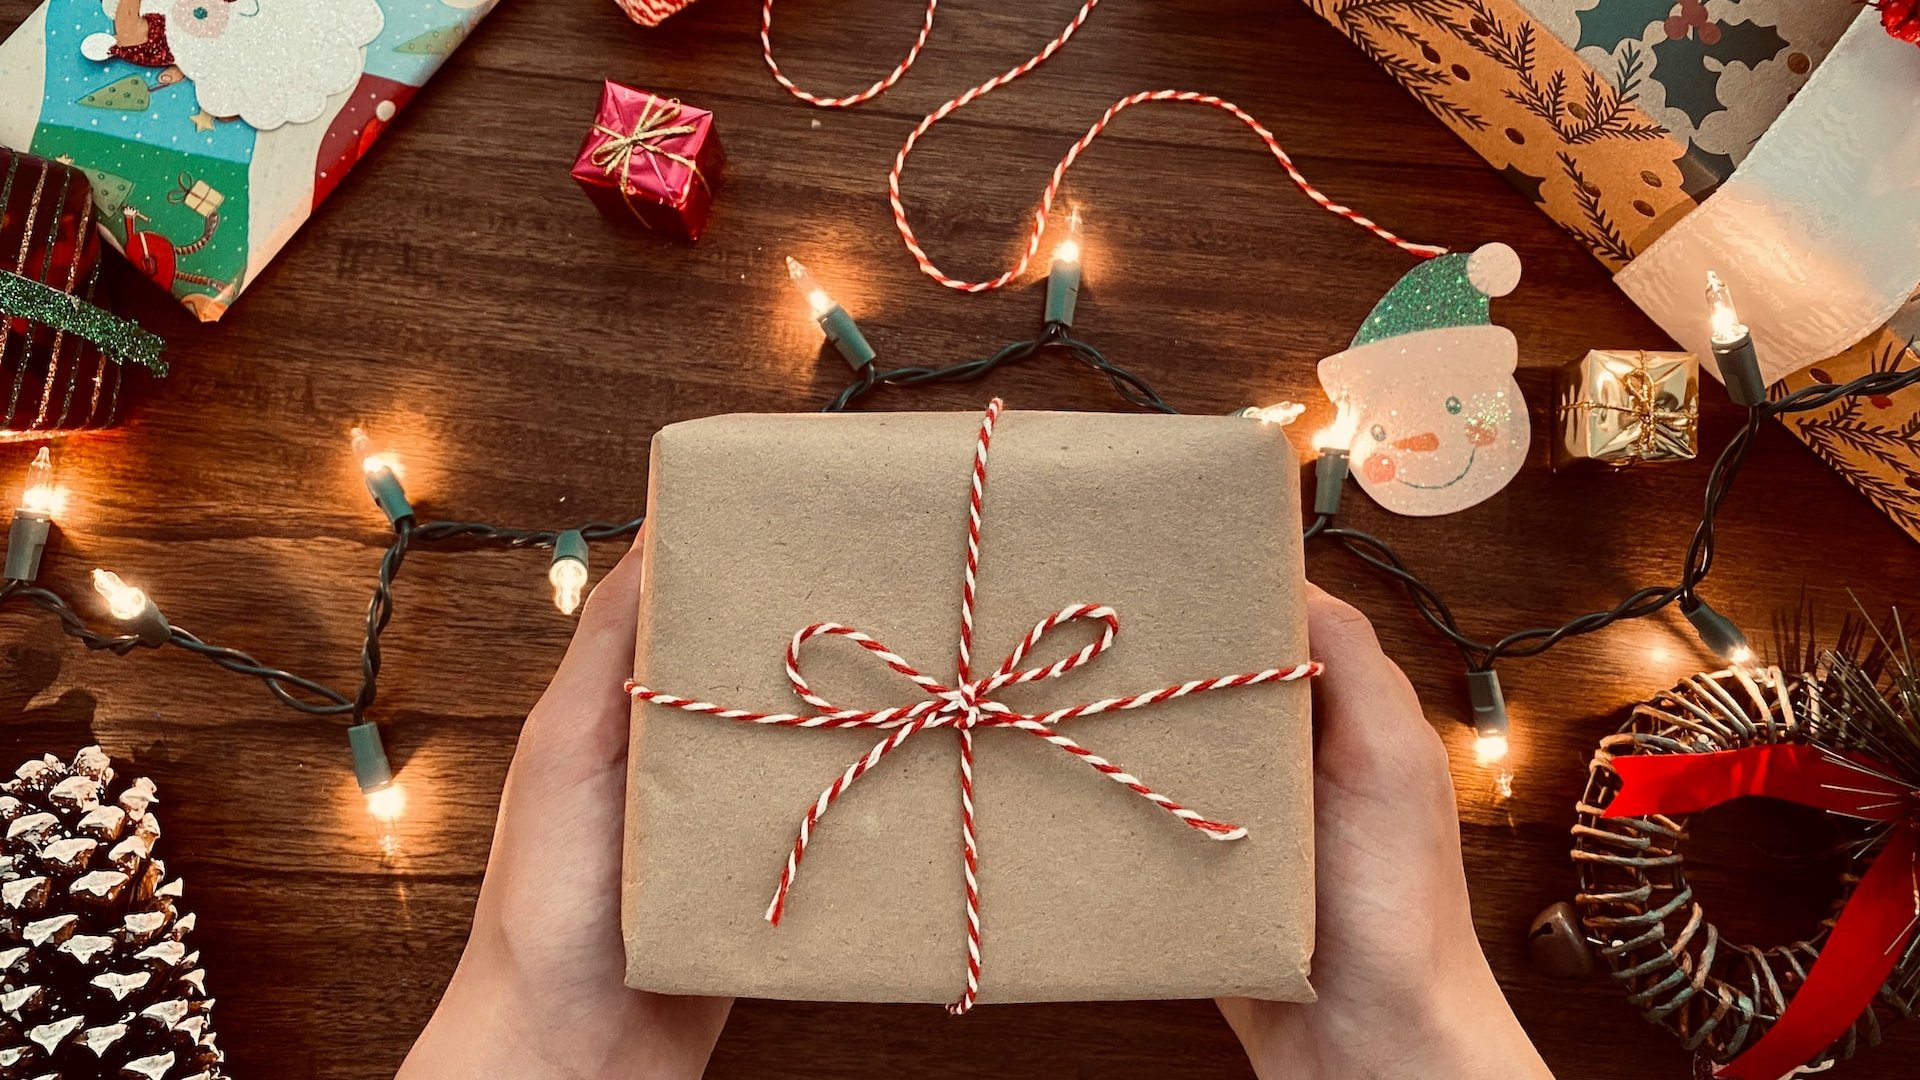 Mãos segurando uma embalagem simples de presente sobre uma mesa cheia de decorações de Natal.